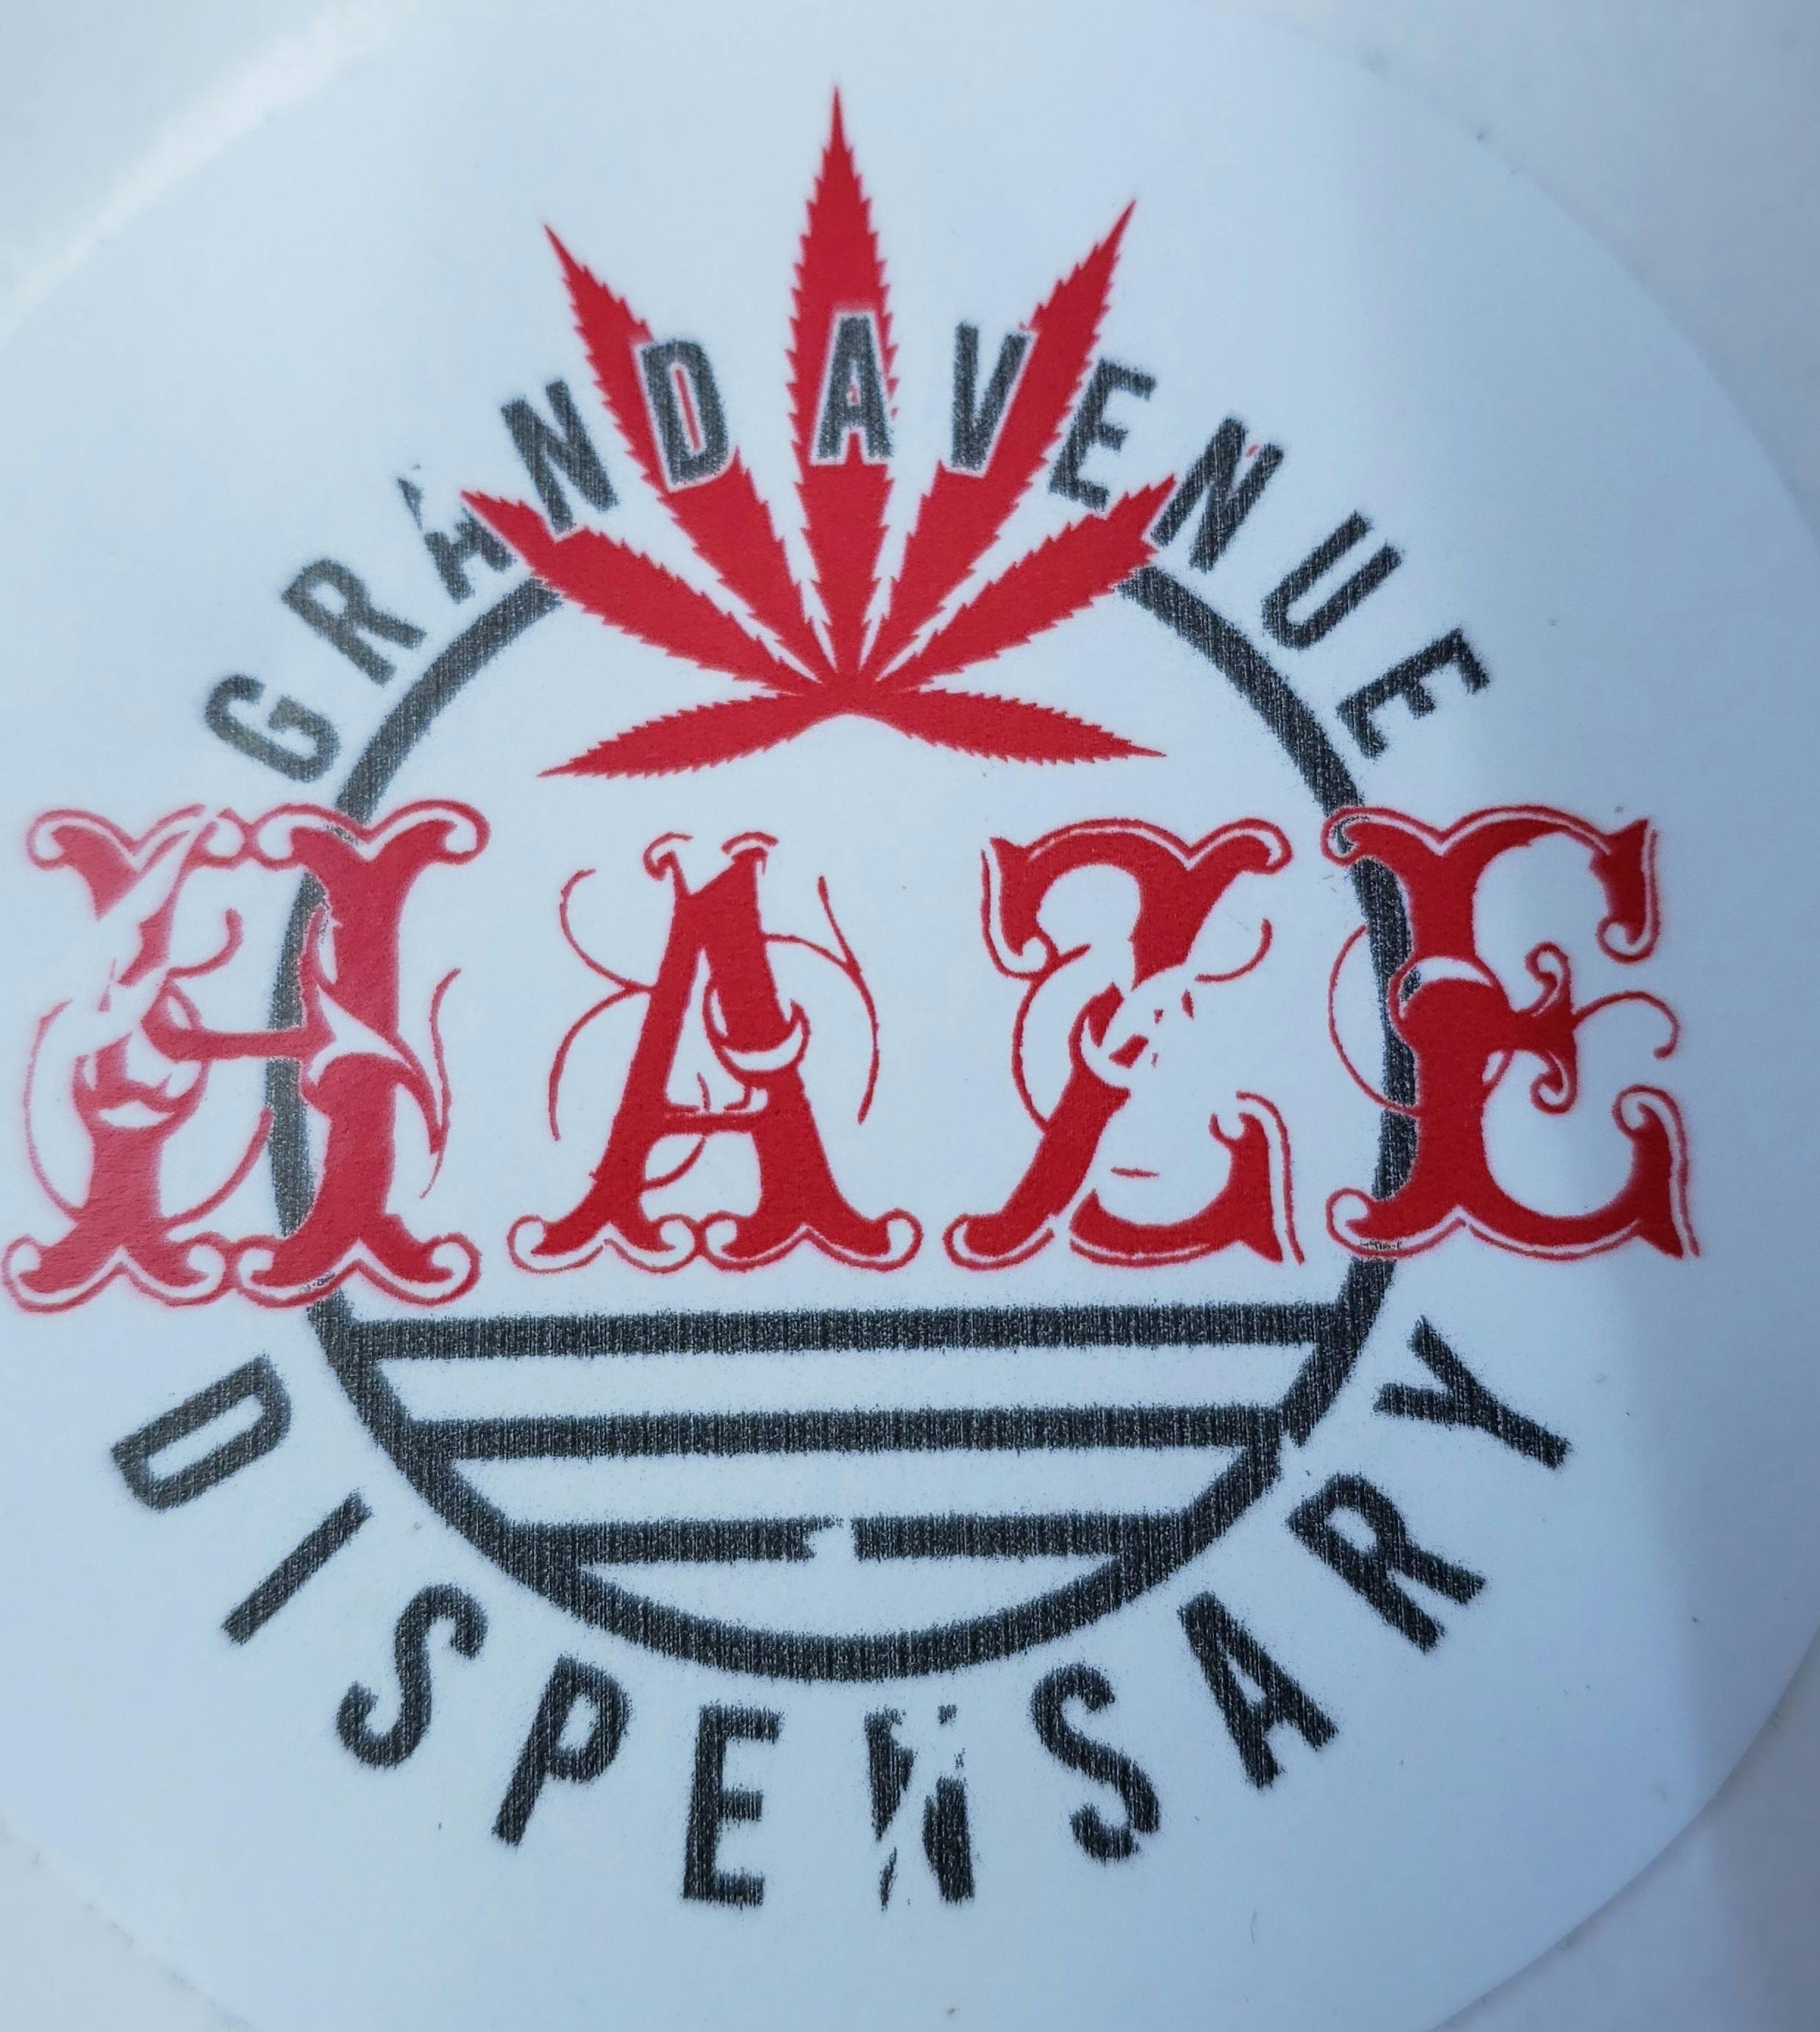 Grand Avenue Haze Dispensary logo